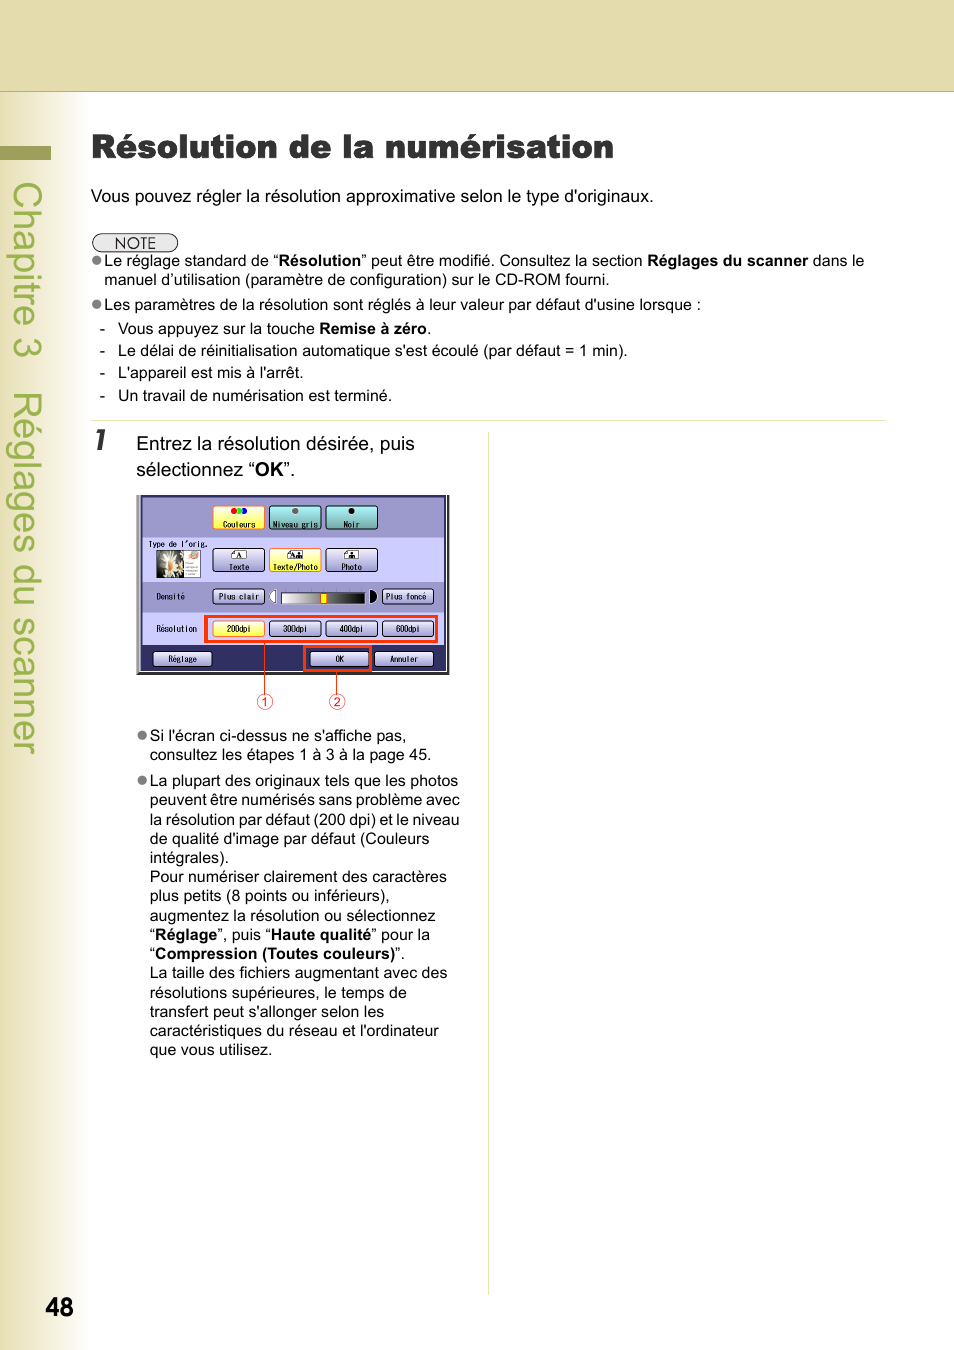 Résolution de la numérisation, Chapitre 3 réglages du scanner | Panasonic DPC266 Manuel d'utilisation | Page 48 / 74